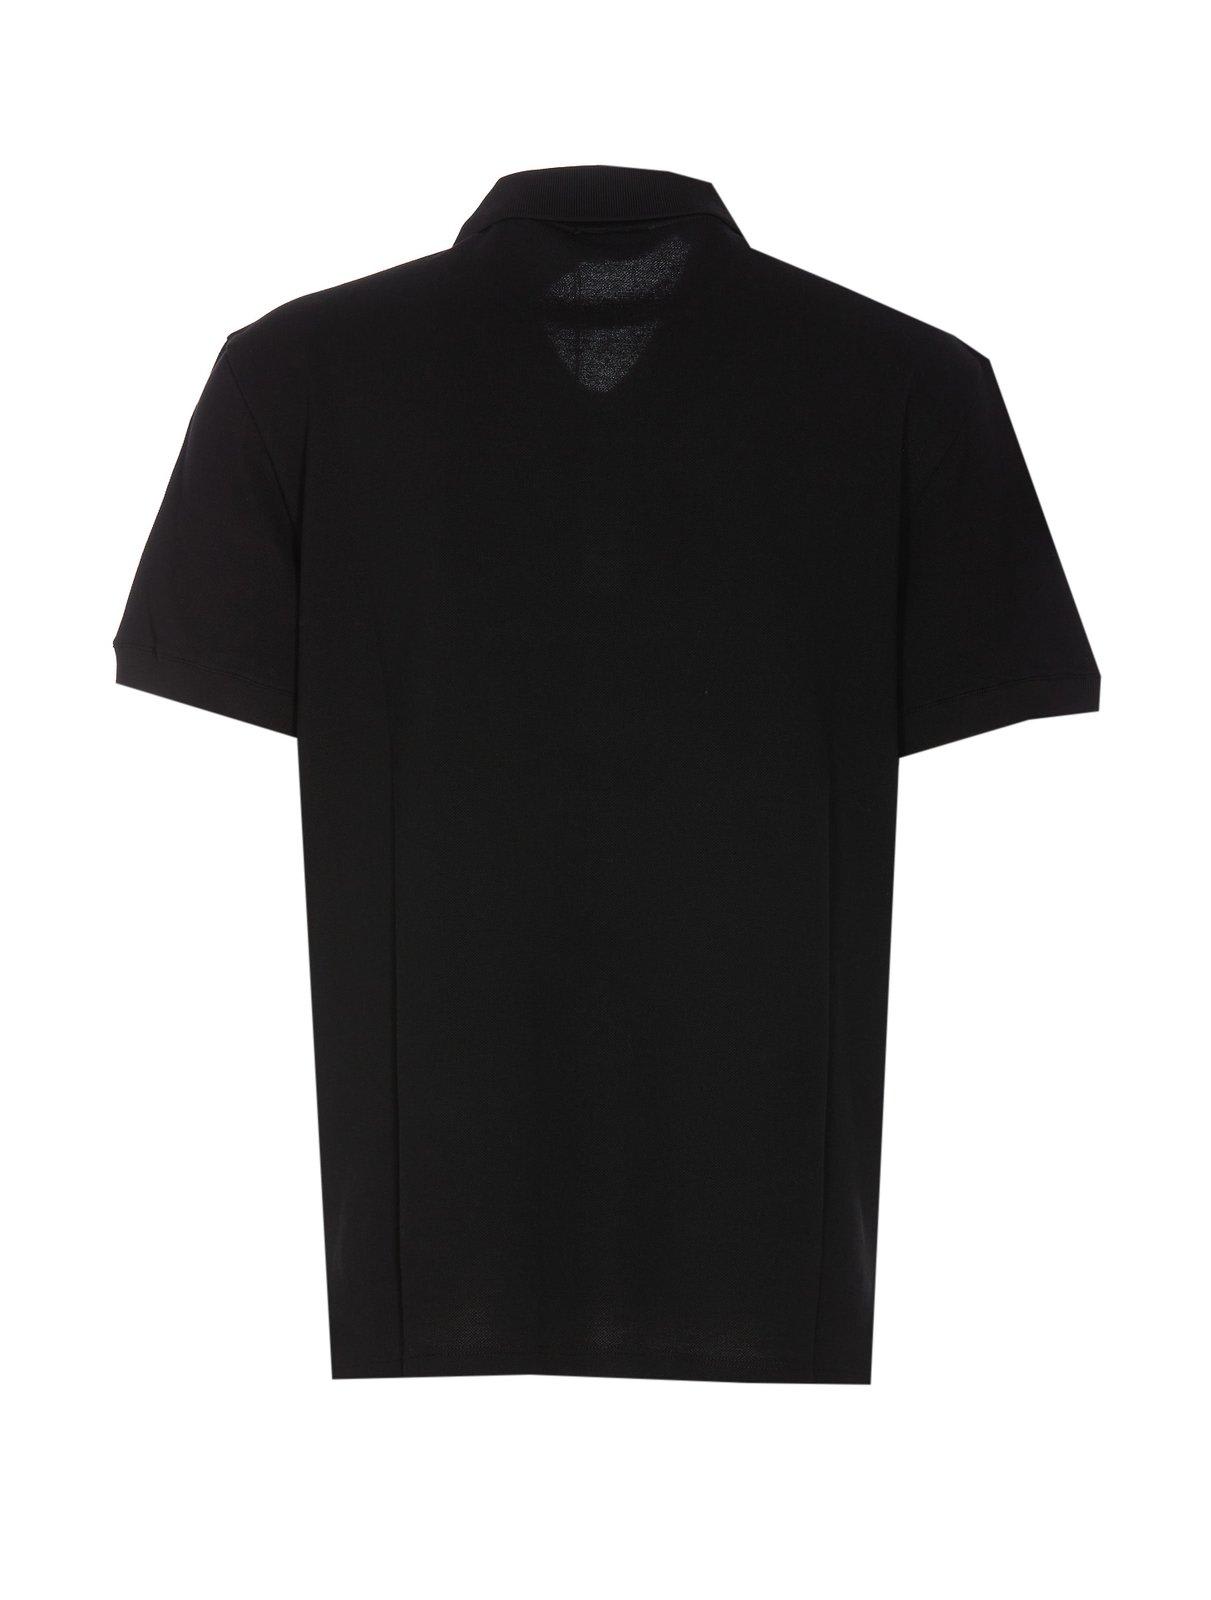 Shop Alexander Mcqueen Logo Embroidered Polo Shirt In Black